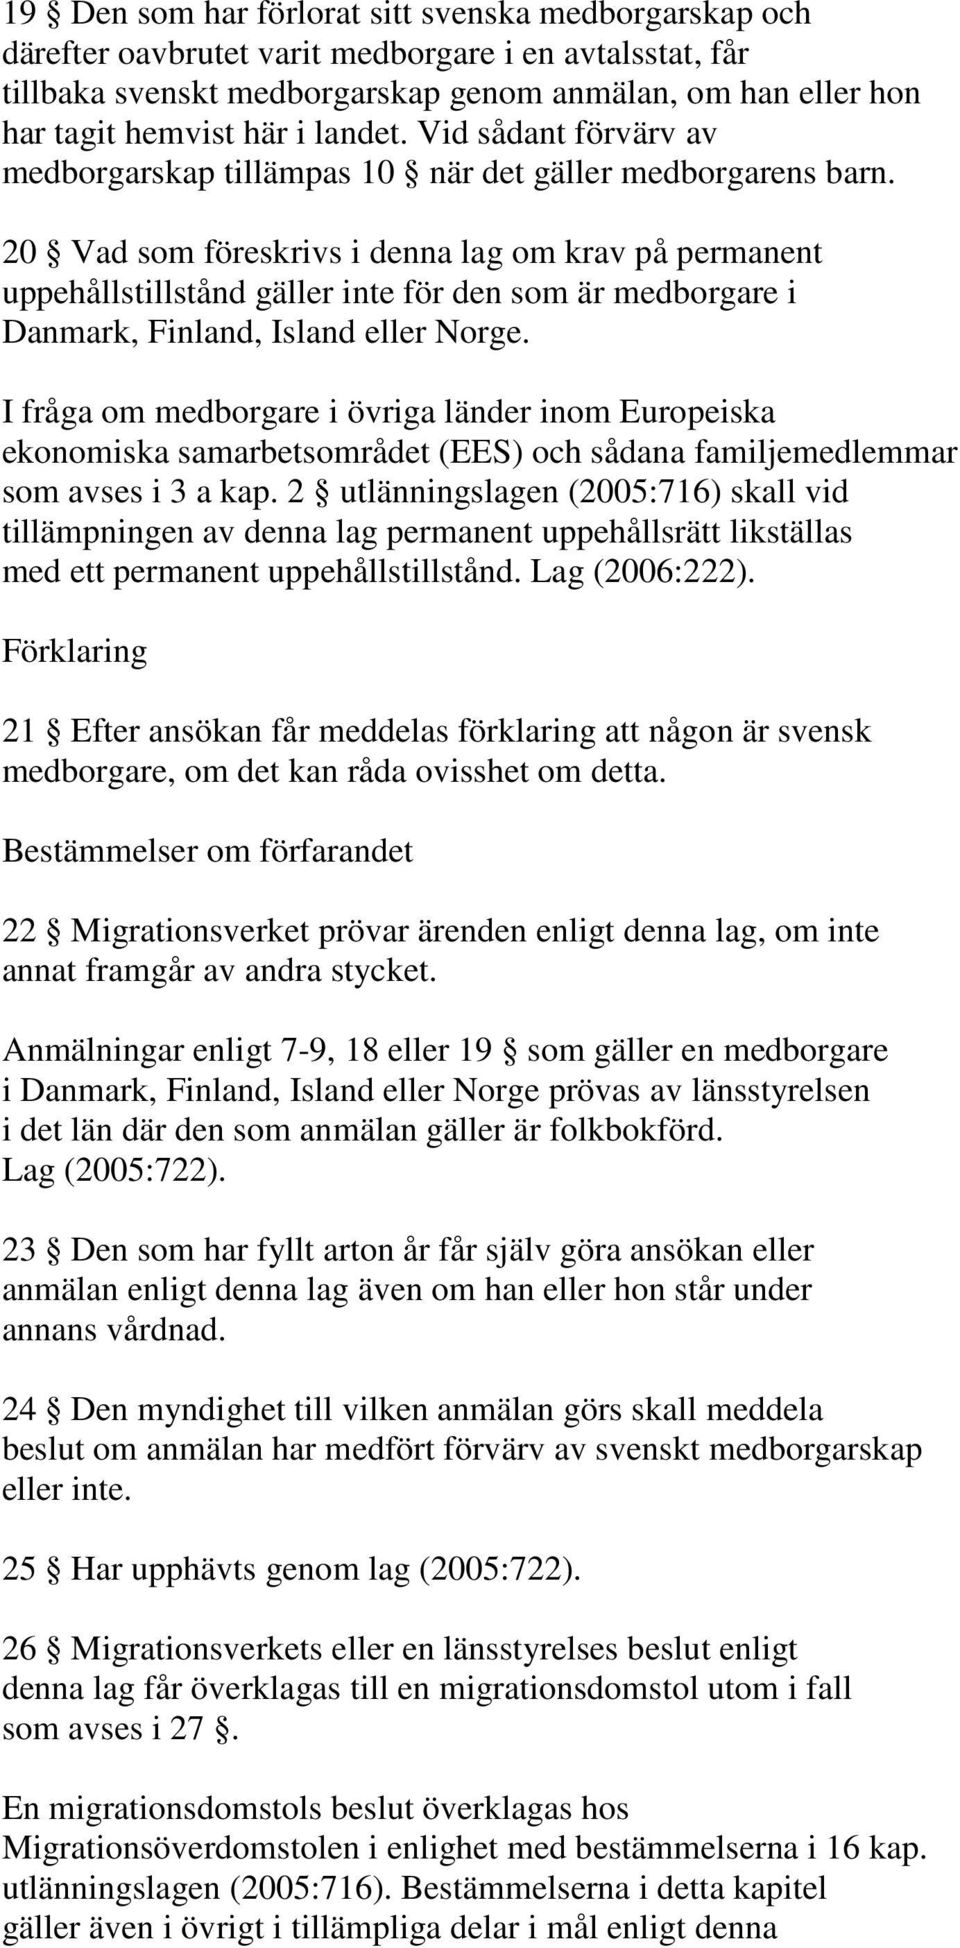 20 Vad som föreskrivs i denna lag om krav på permanent uppehållstillstånd gäller inte för den som är medborgare i Danmark, Finland, Island eller Norge.